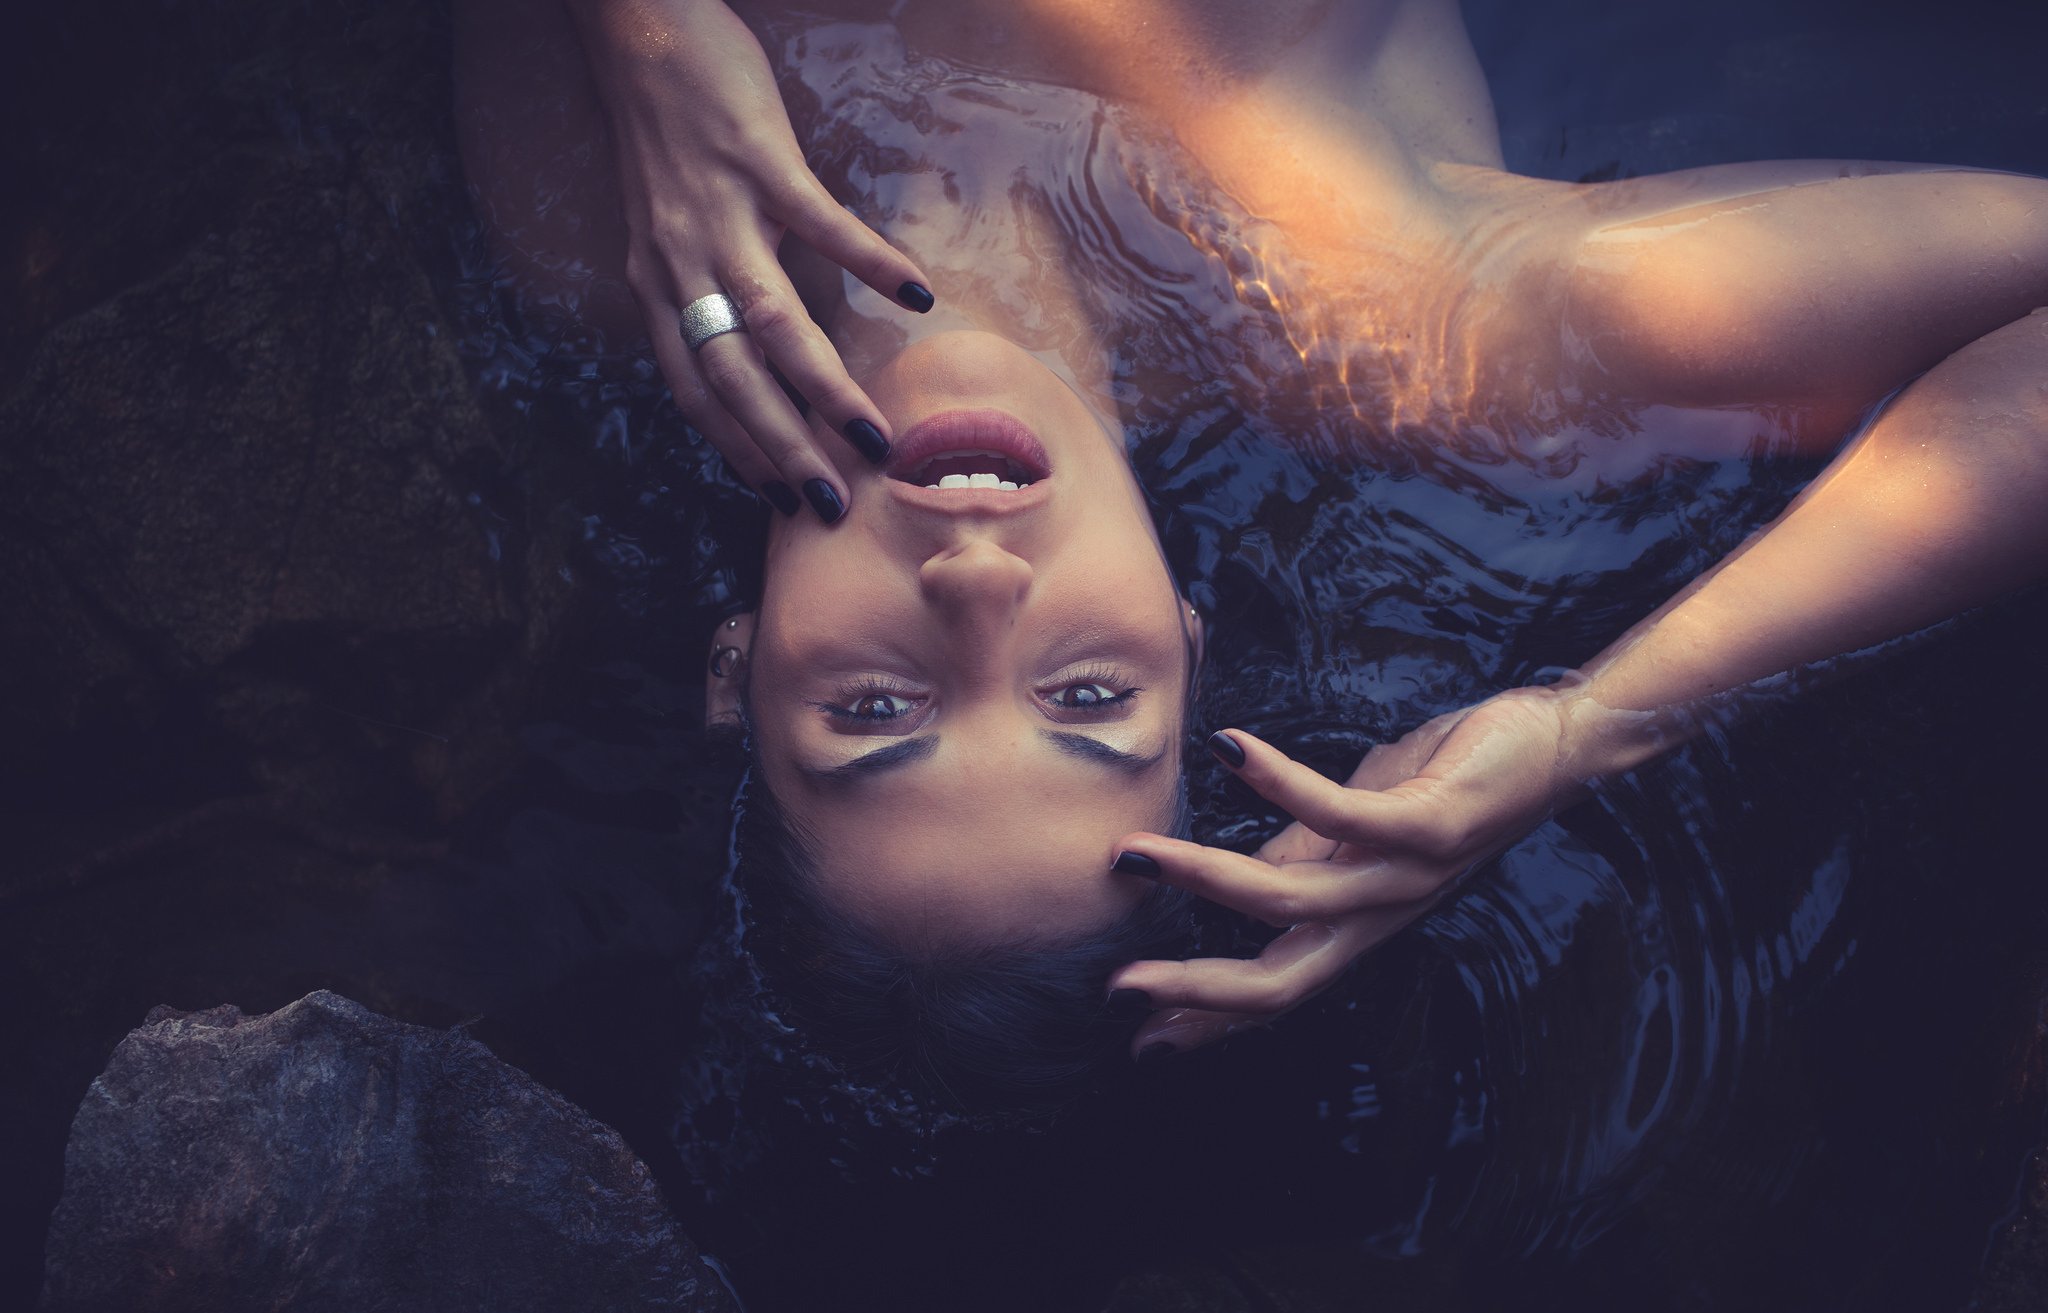 Удовлетворение телом. Девушка наслаждение. Портрет под водой. Женщина под водой. Лицо девушки в воде.